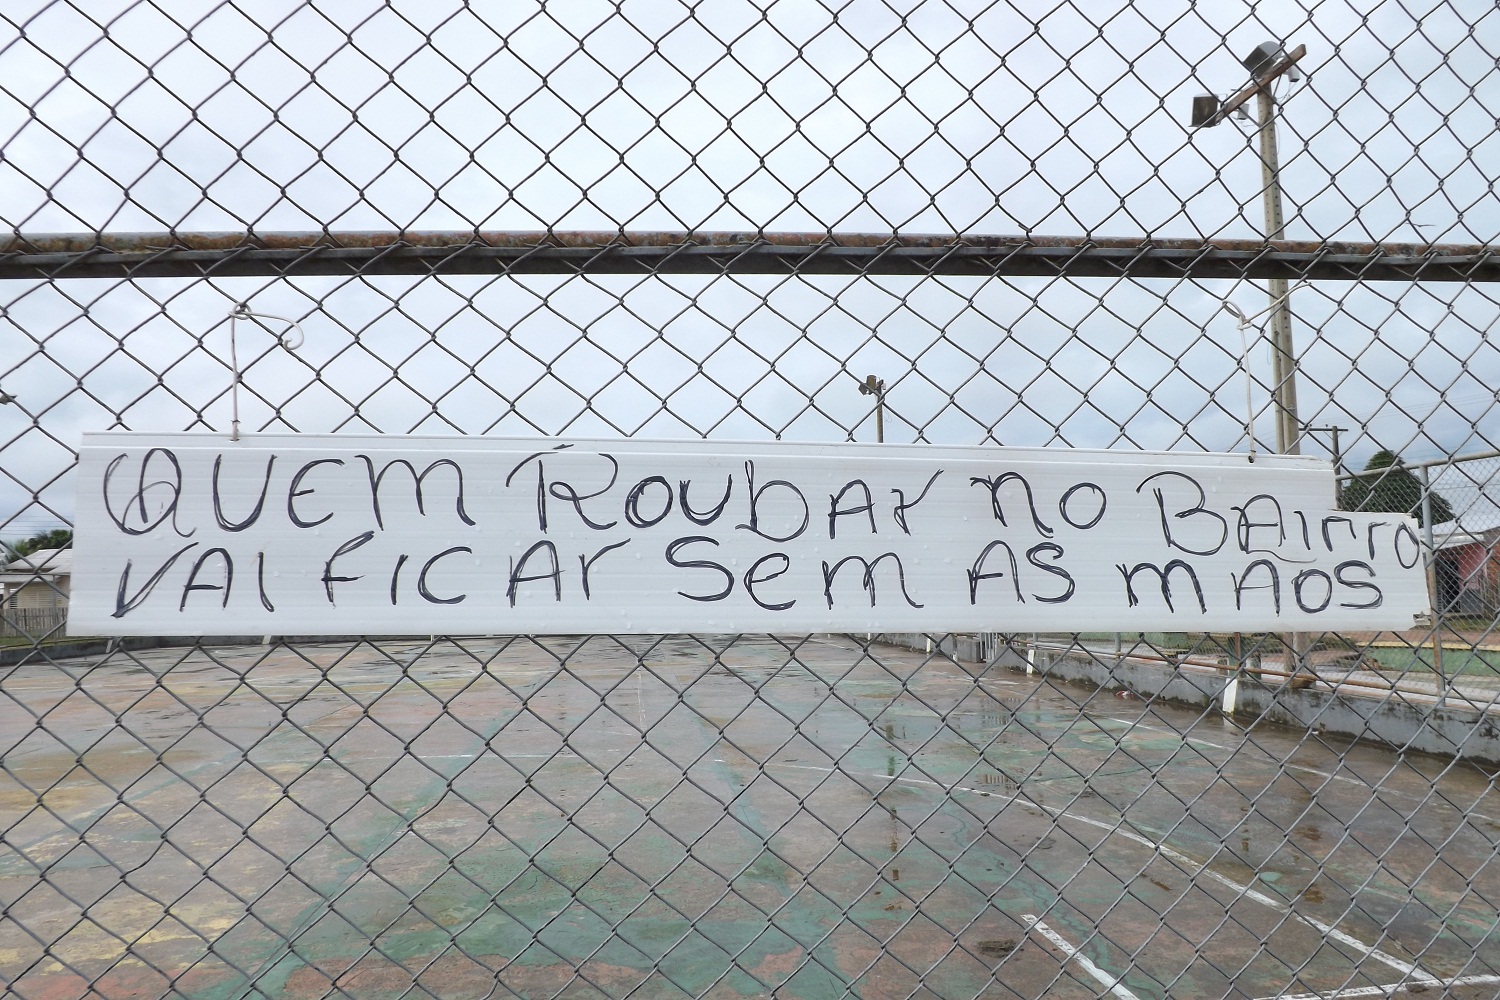 EM FEIJÓ: “A ORDEM FOI DADA” quem roubar no bairro Genir Nunes vai ficar sem as mãos